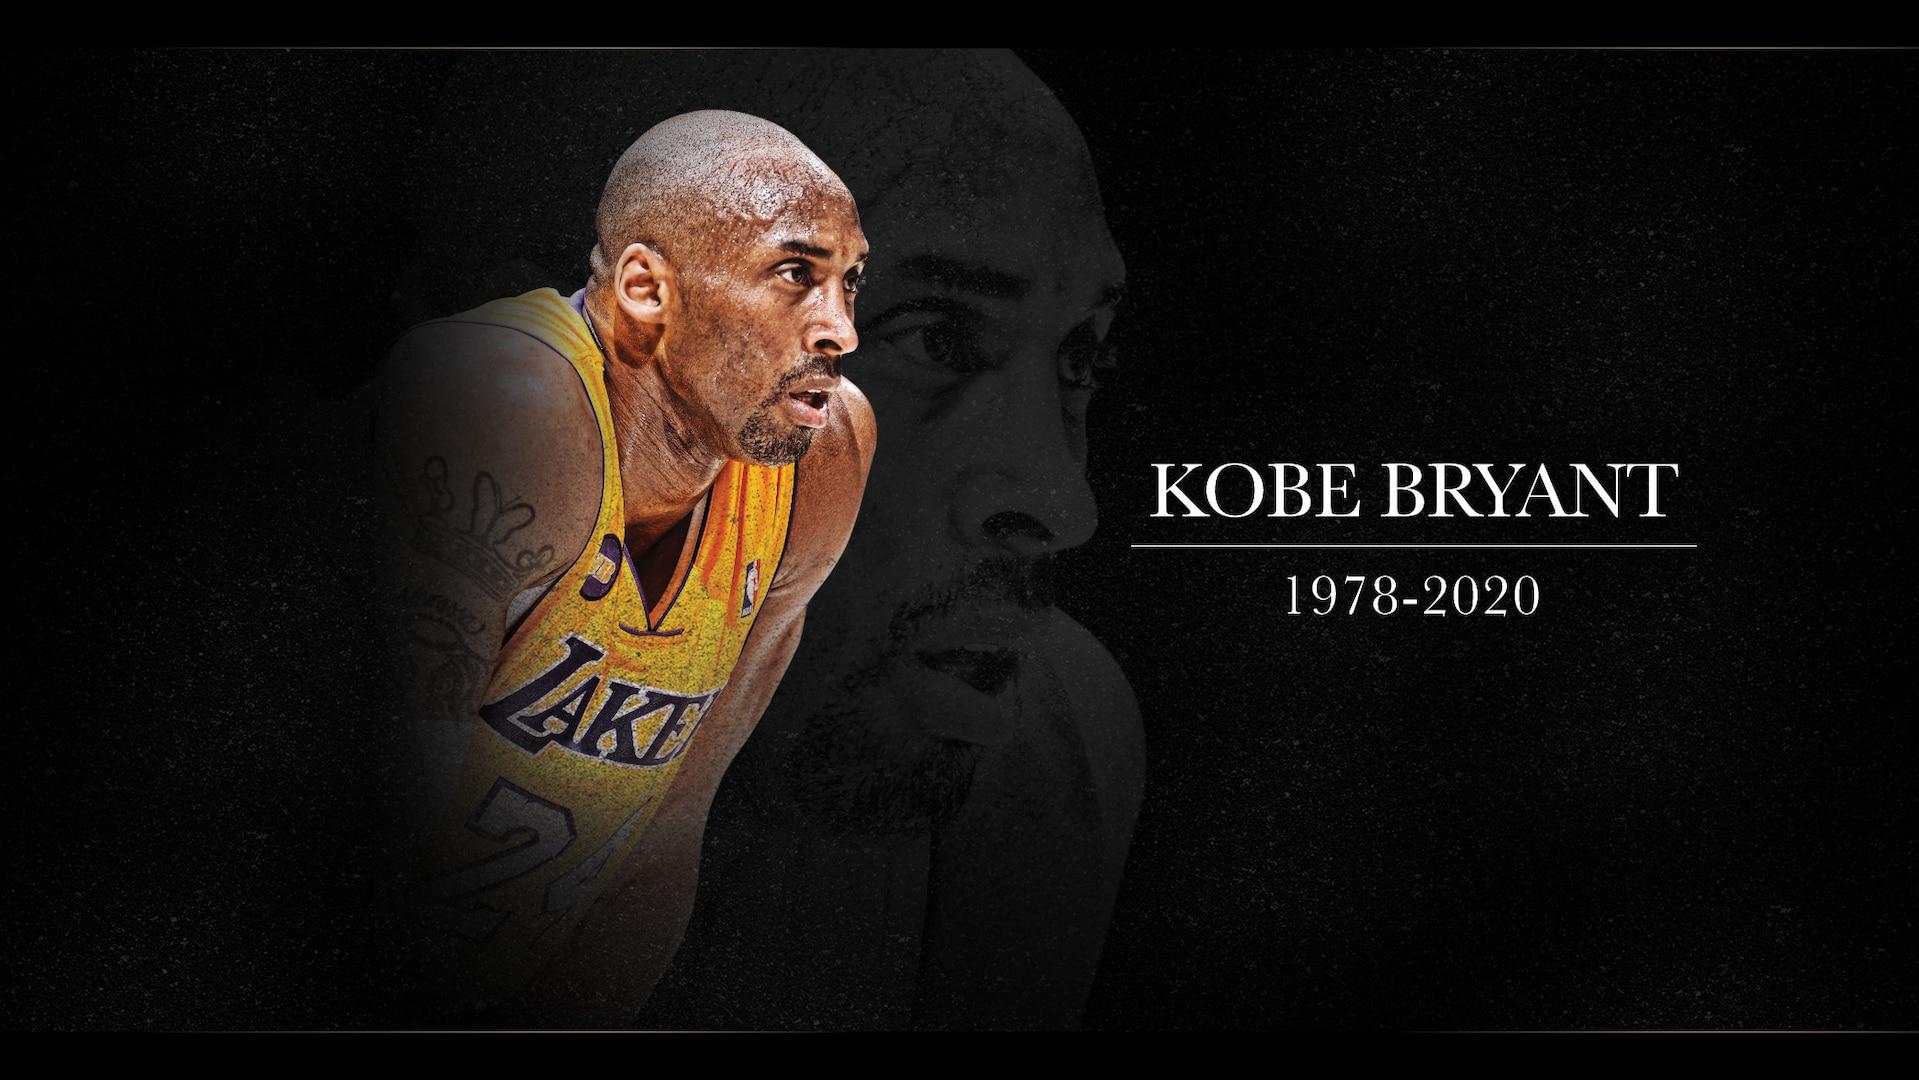 Los Angeles Lakers legend Kobe Bryant dies